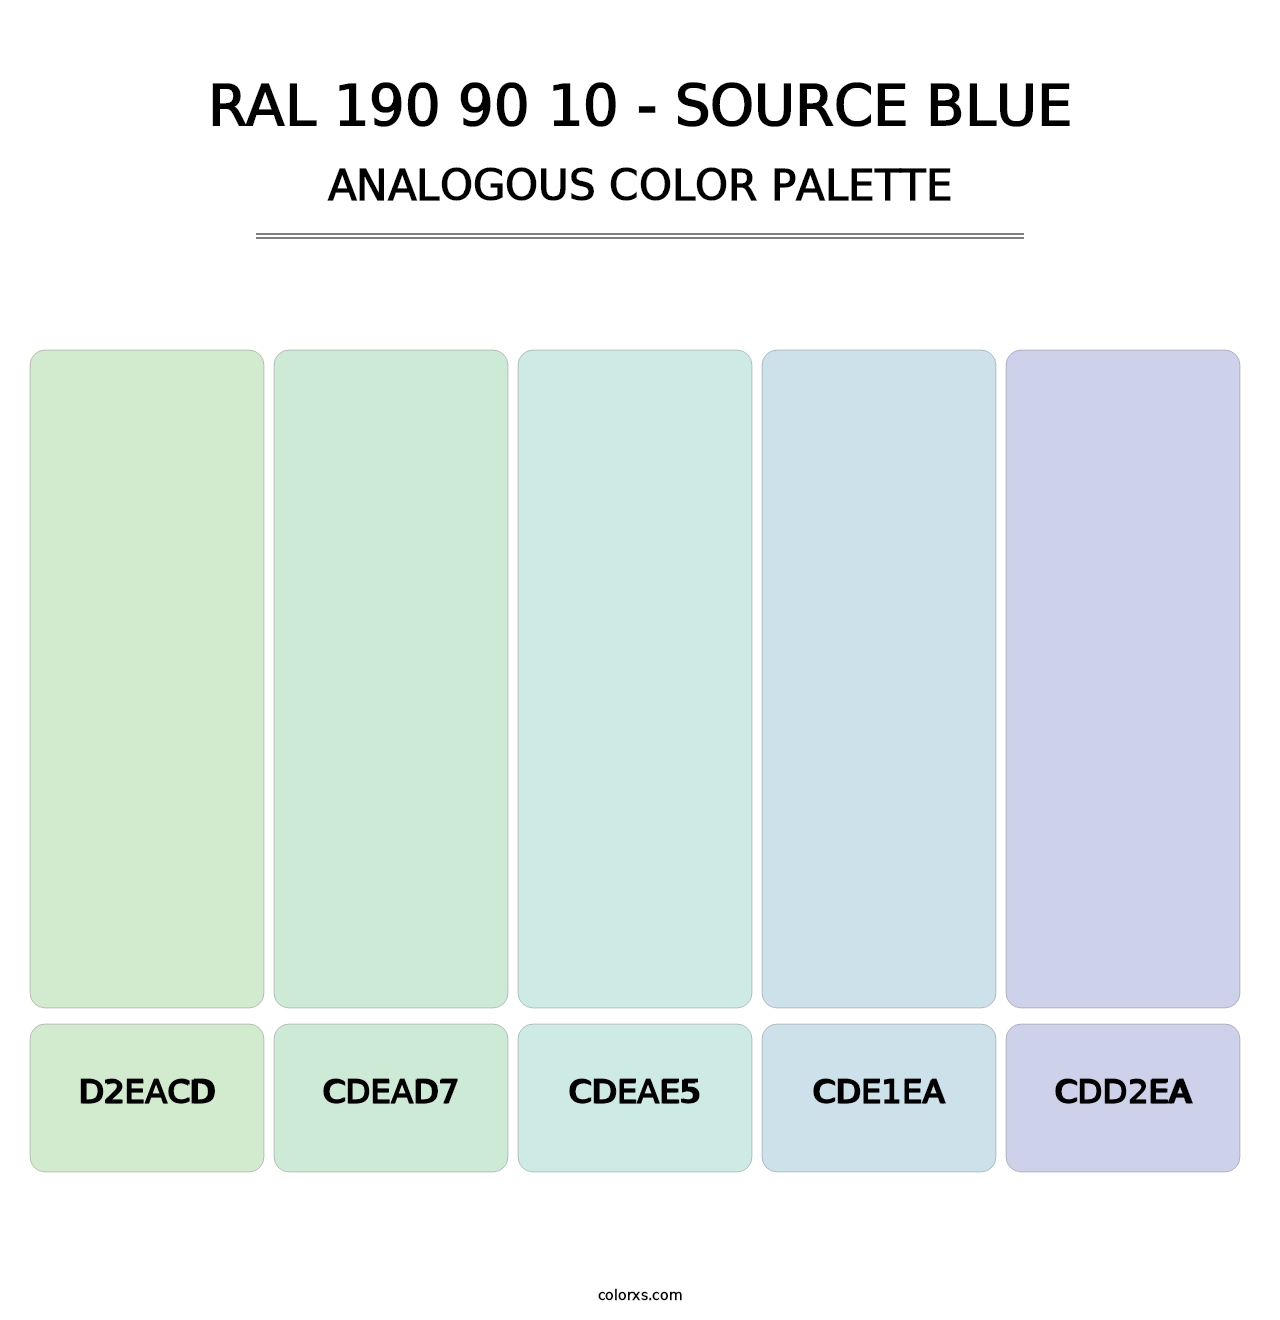 RAL 190 90 10 - Source Blue - Analogous Color Palette